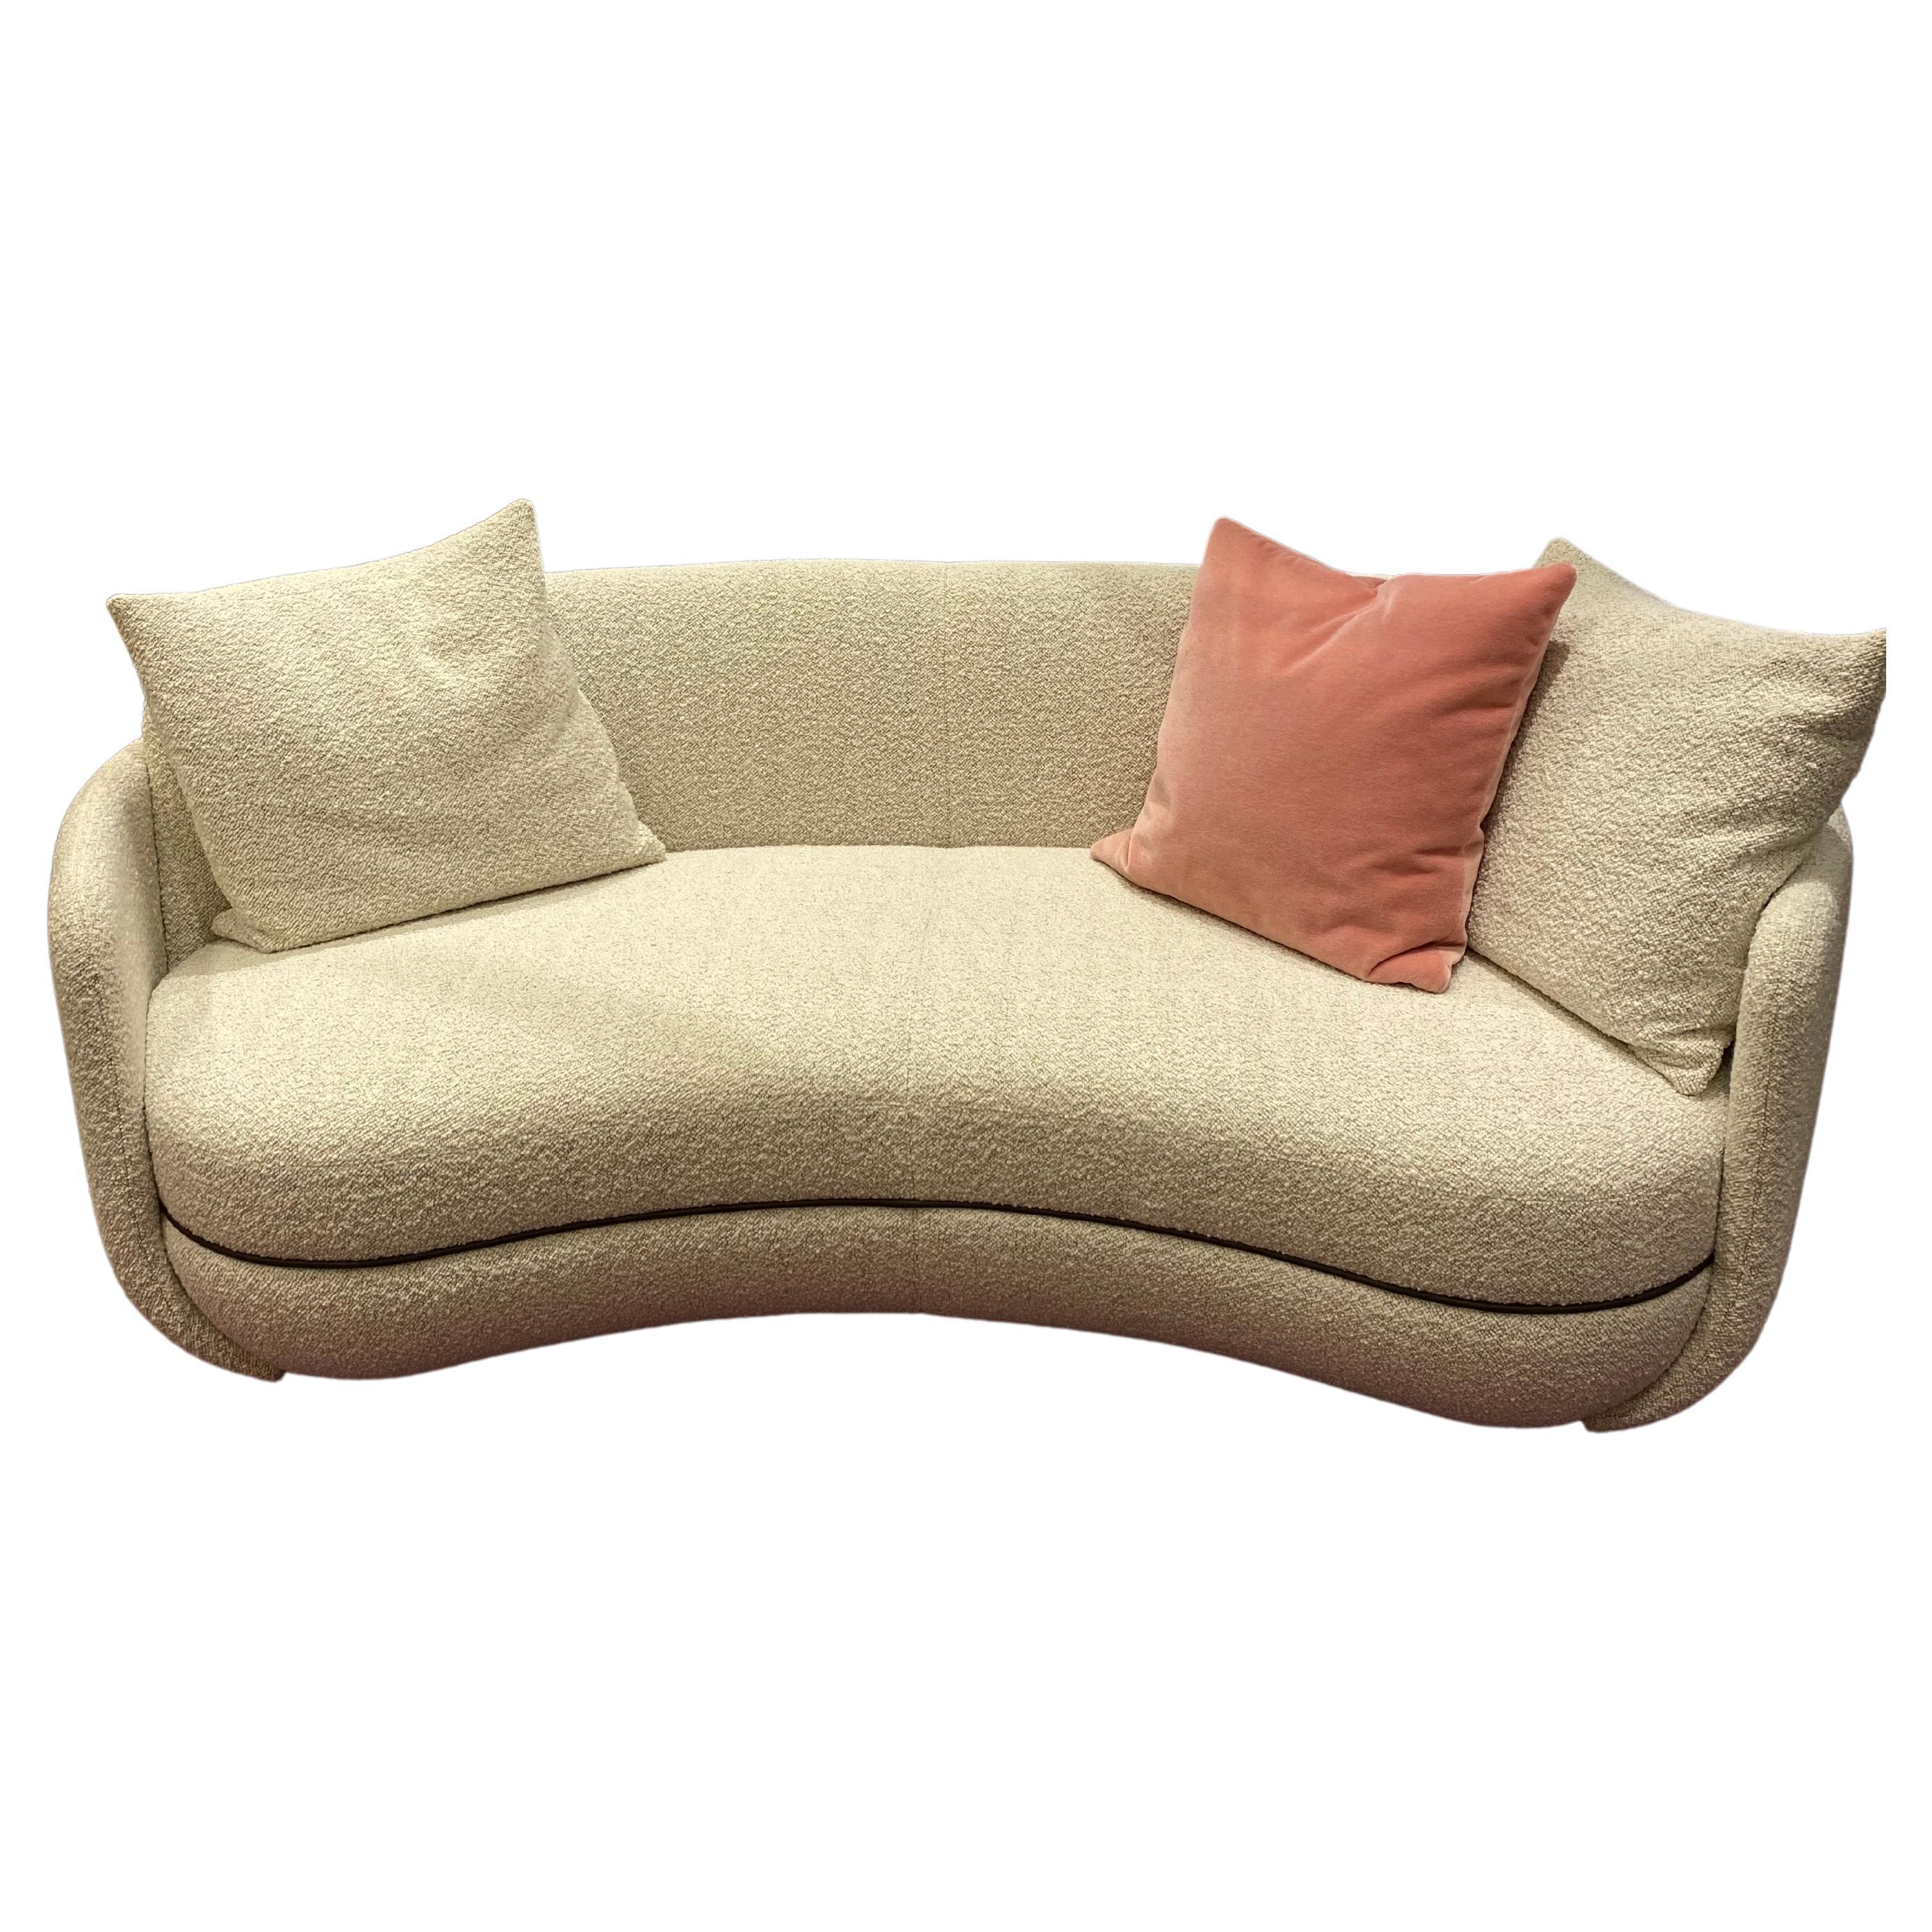  Wittmann Miles Curved Sofa by Sebastian Herkner  For Sale